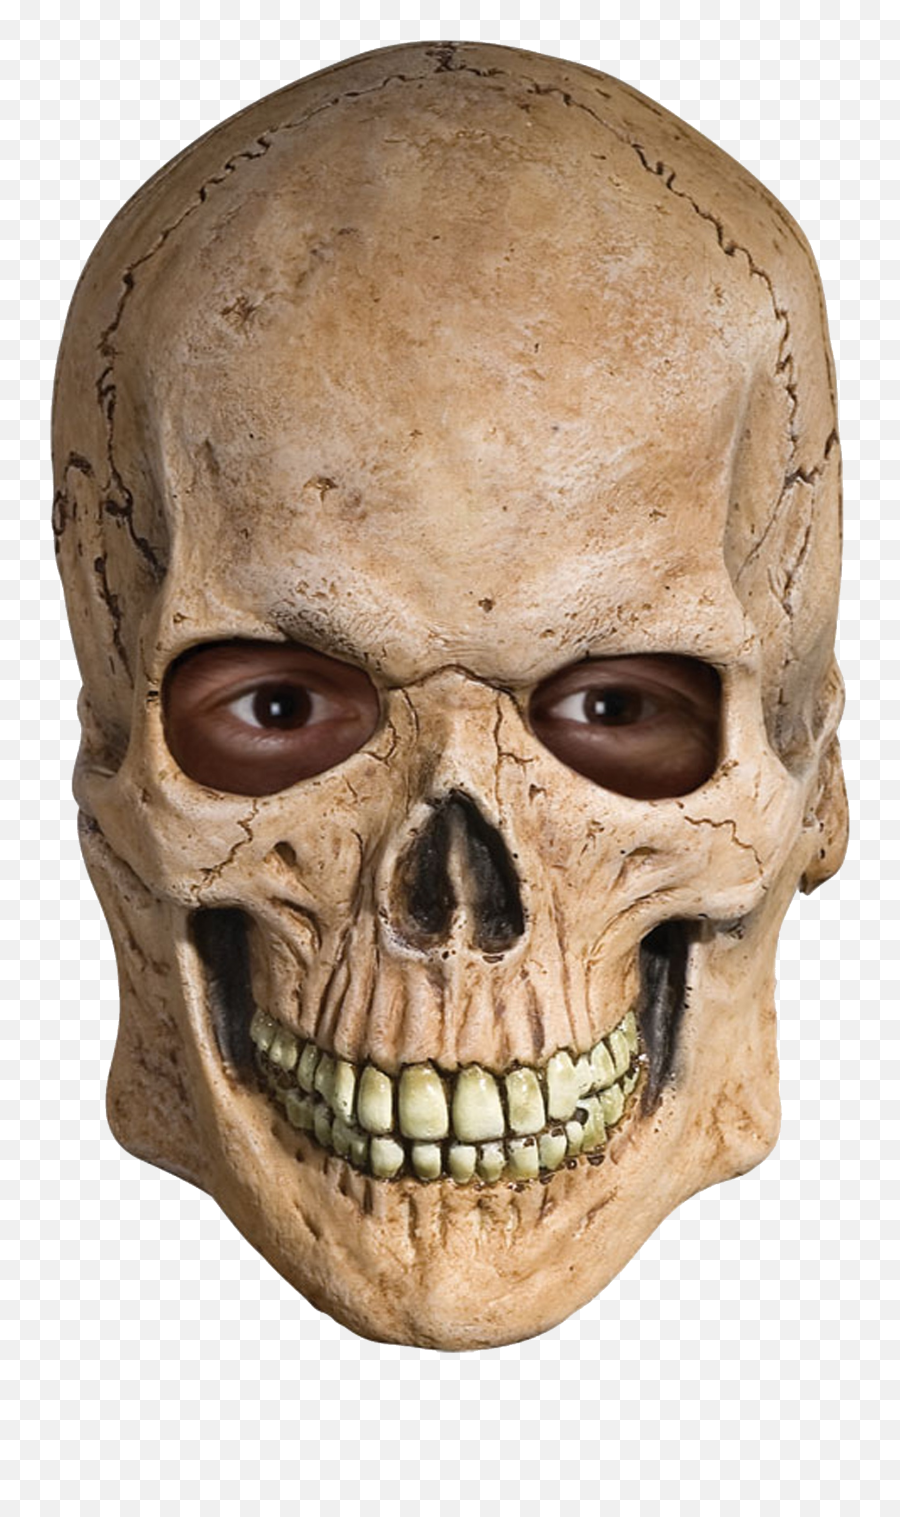 Download Free Png Skull - Human Skull Transparent Background,Skull Face Png